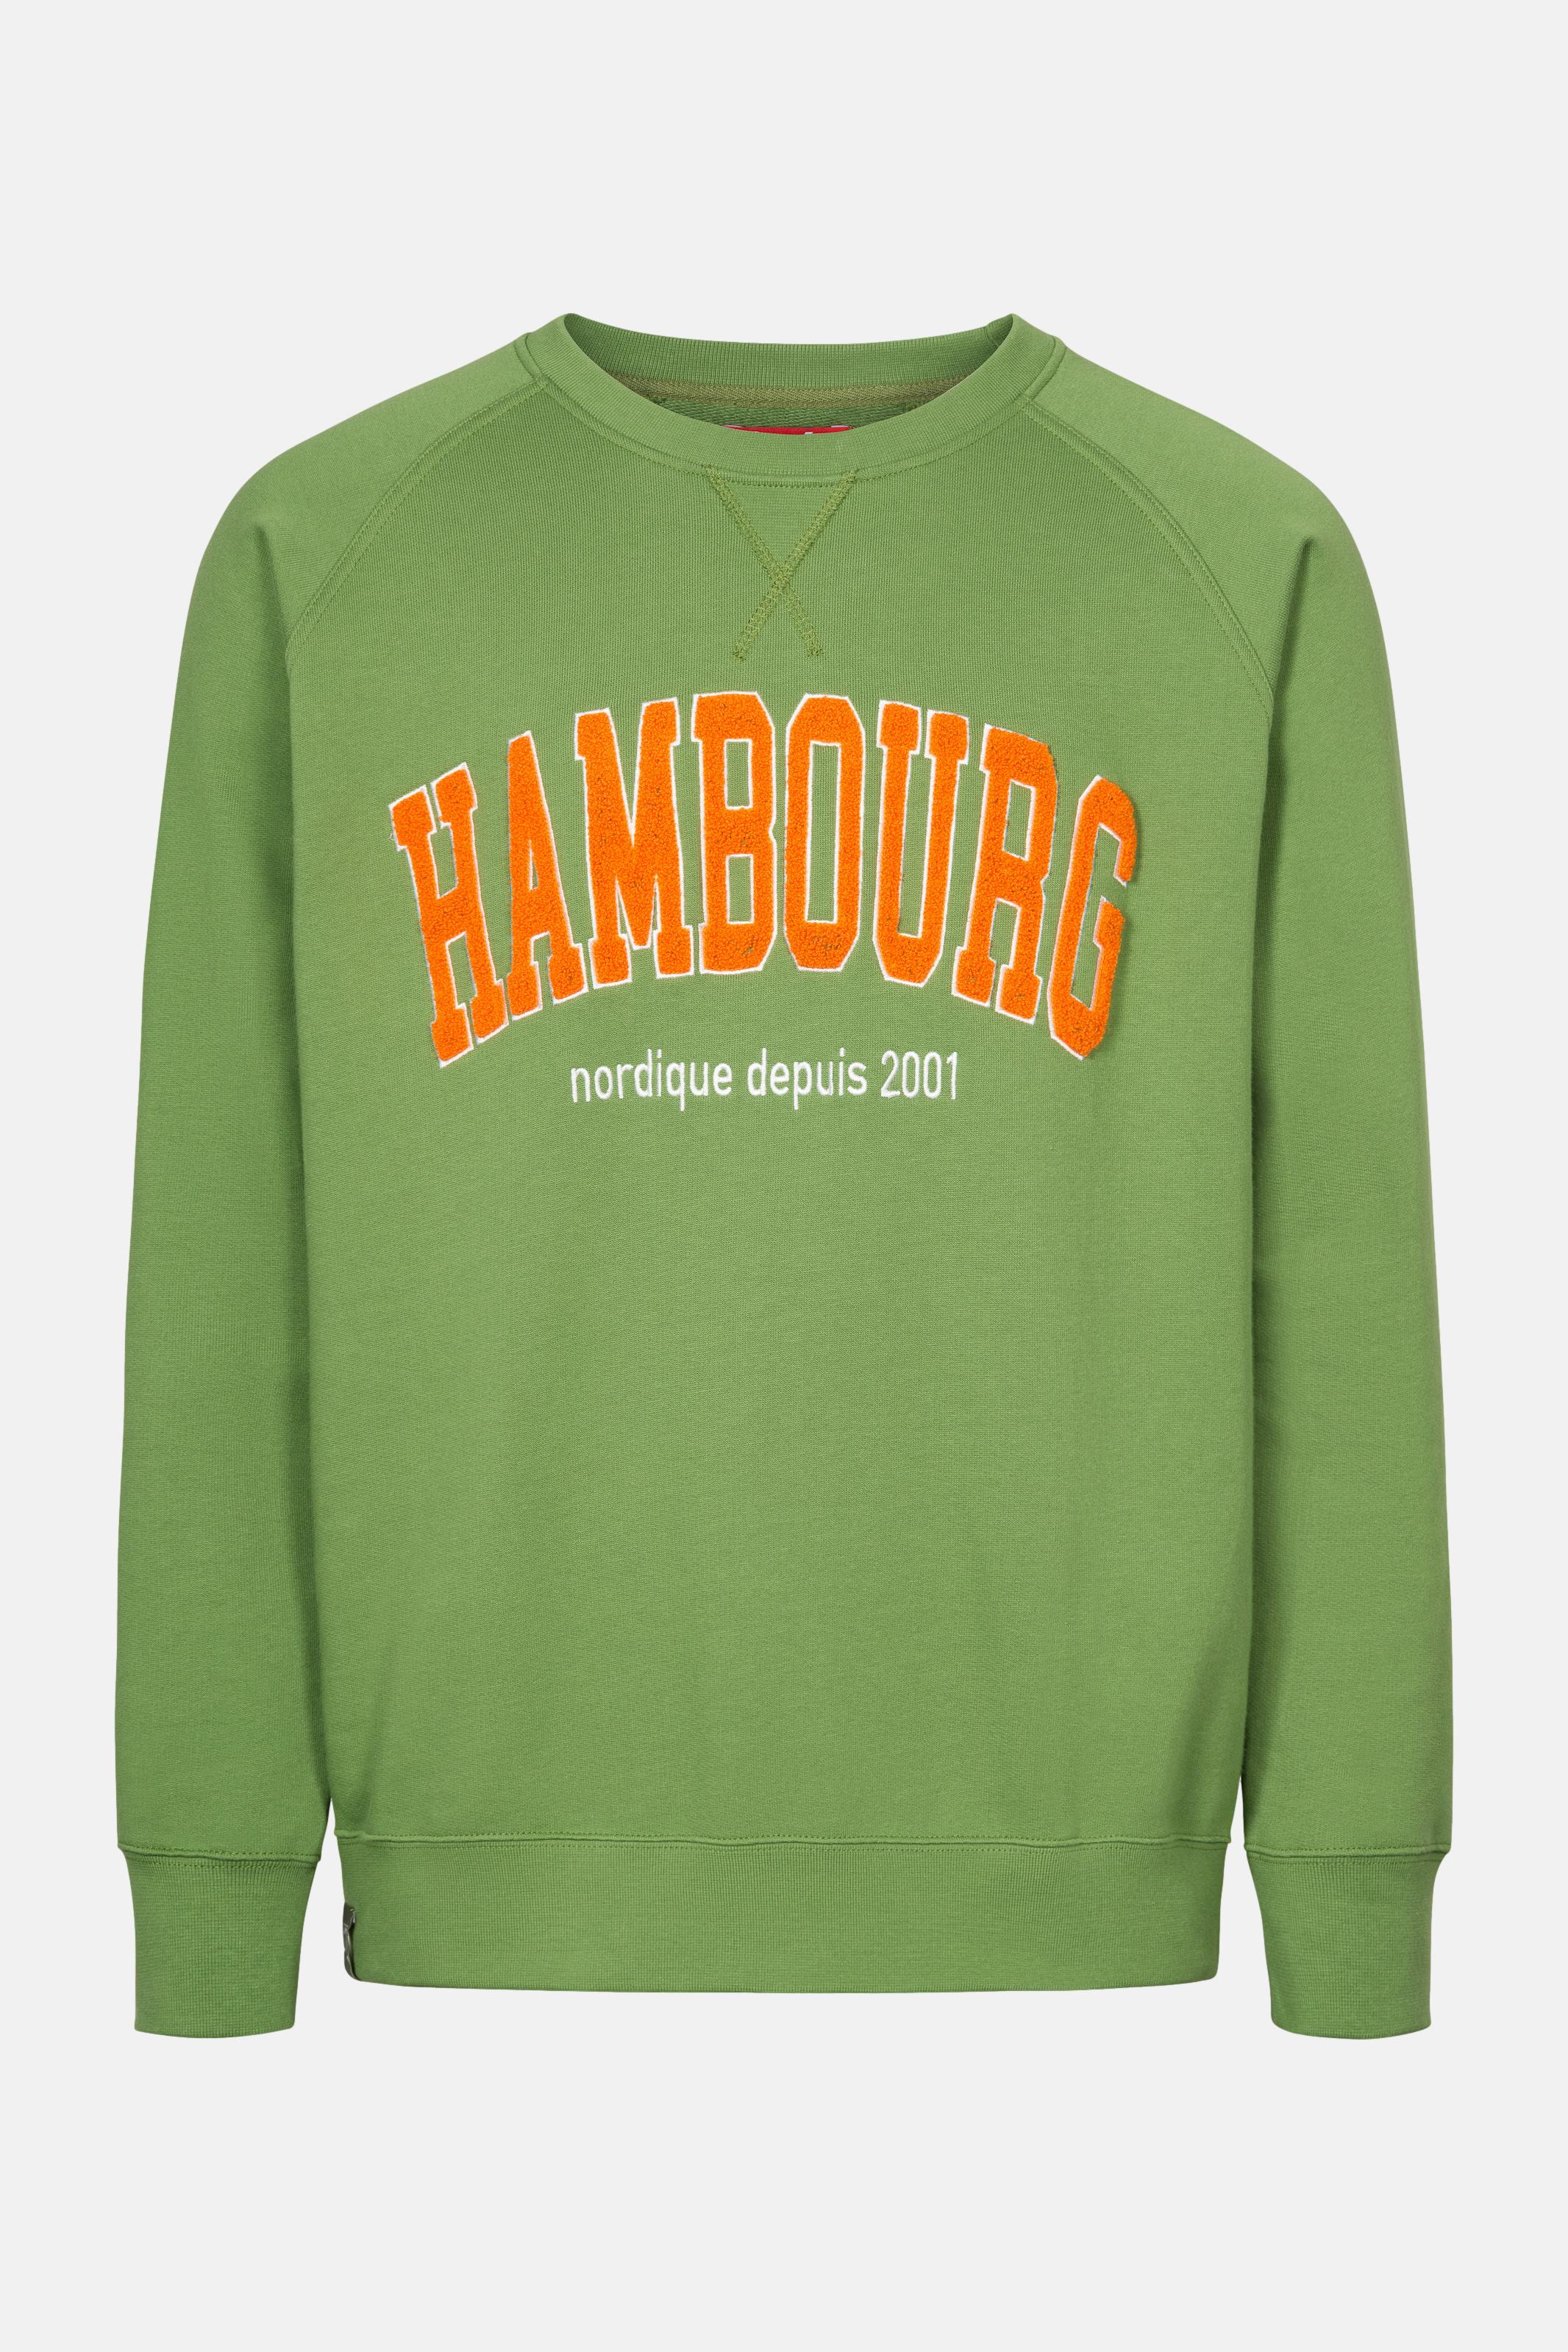 Derbe Grün Hambourg Herren Nachhaltig Sweatshirt Cactus Pullover Baumwolle